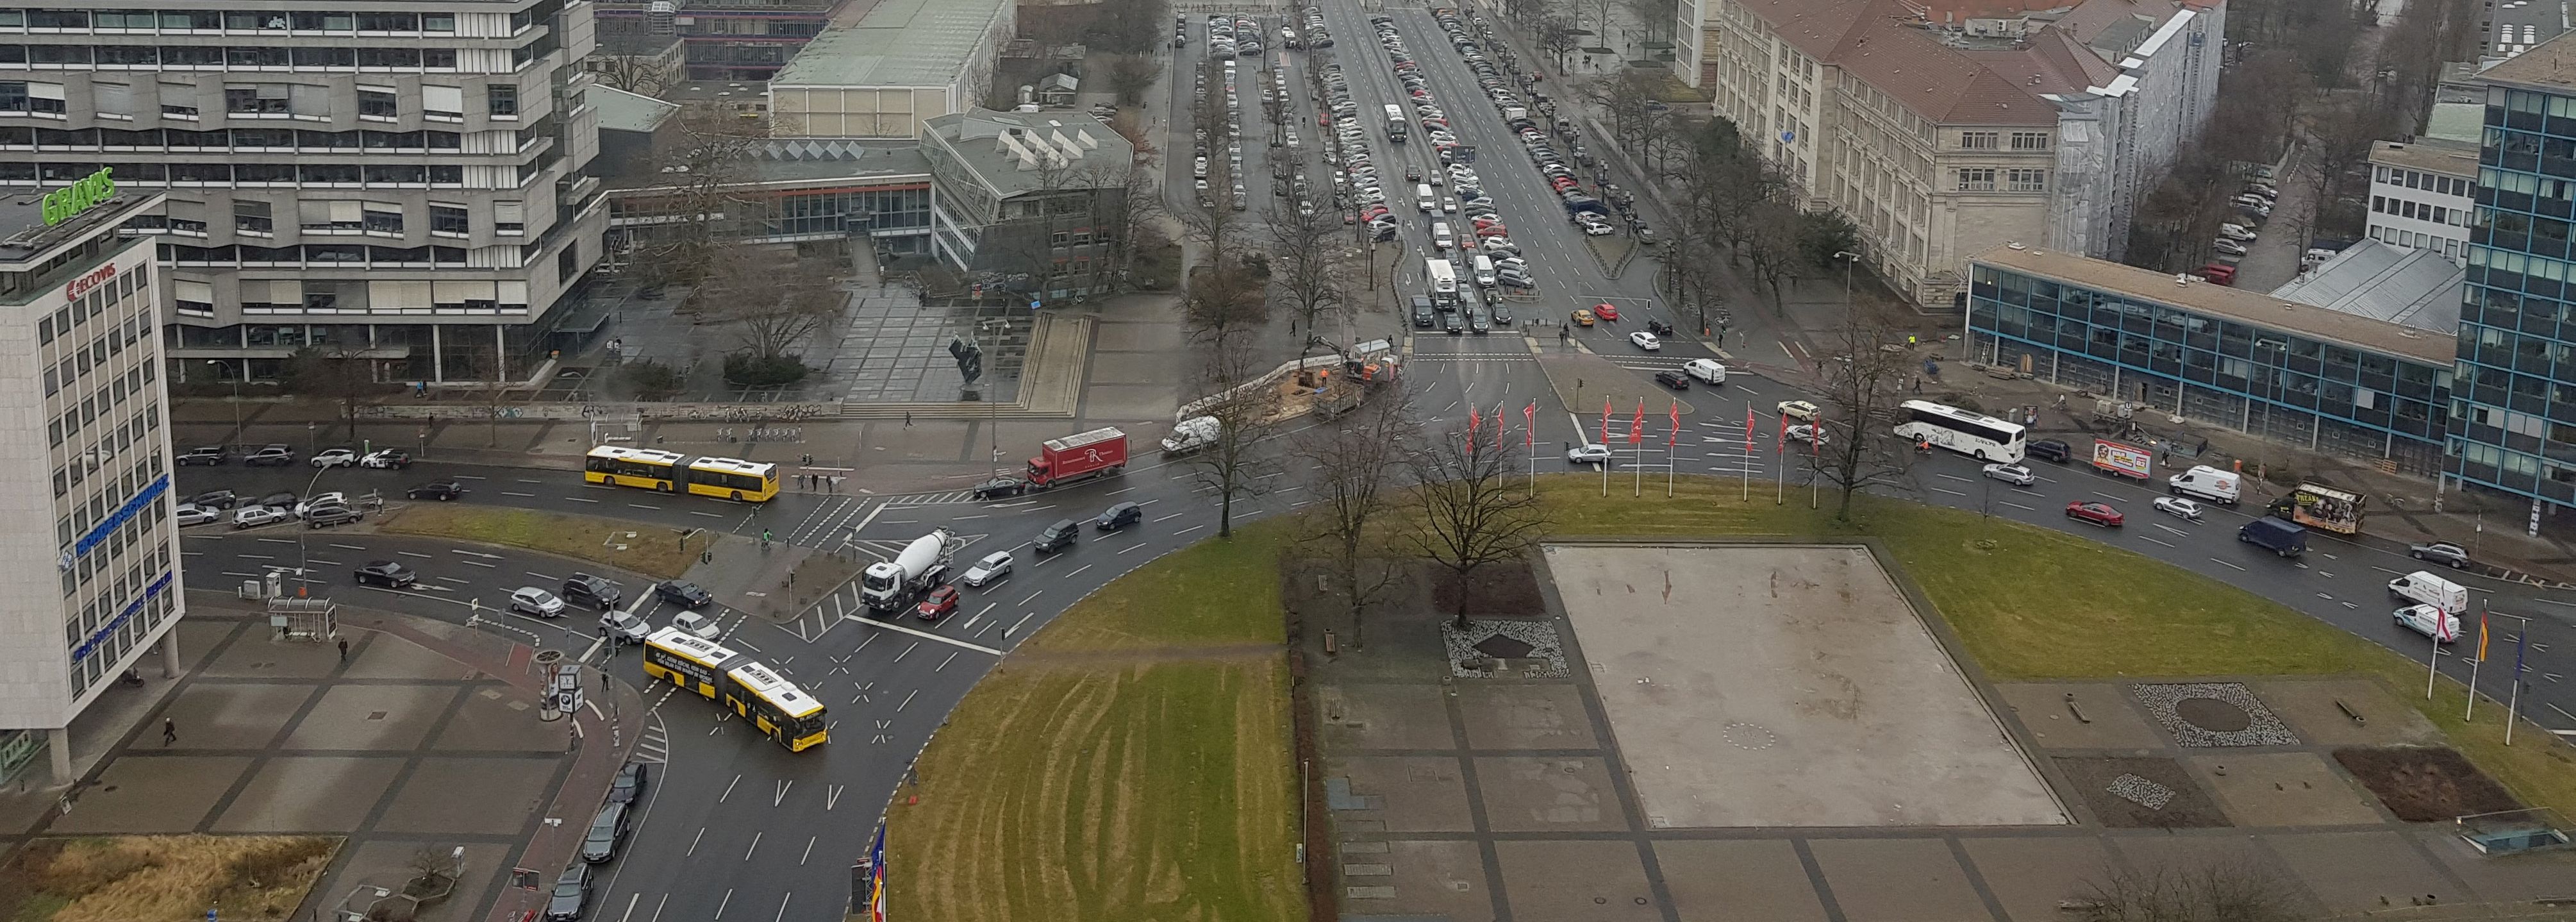 Flächenverbrauch für den Kfz-Verkehr (Ernst-Reuter-Platz, Berlin), eigenes Foto